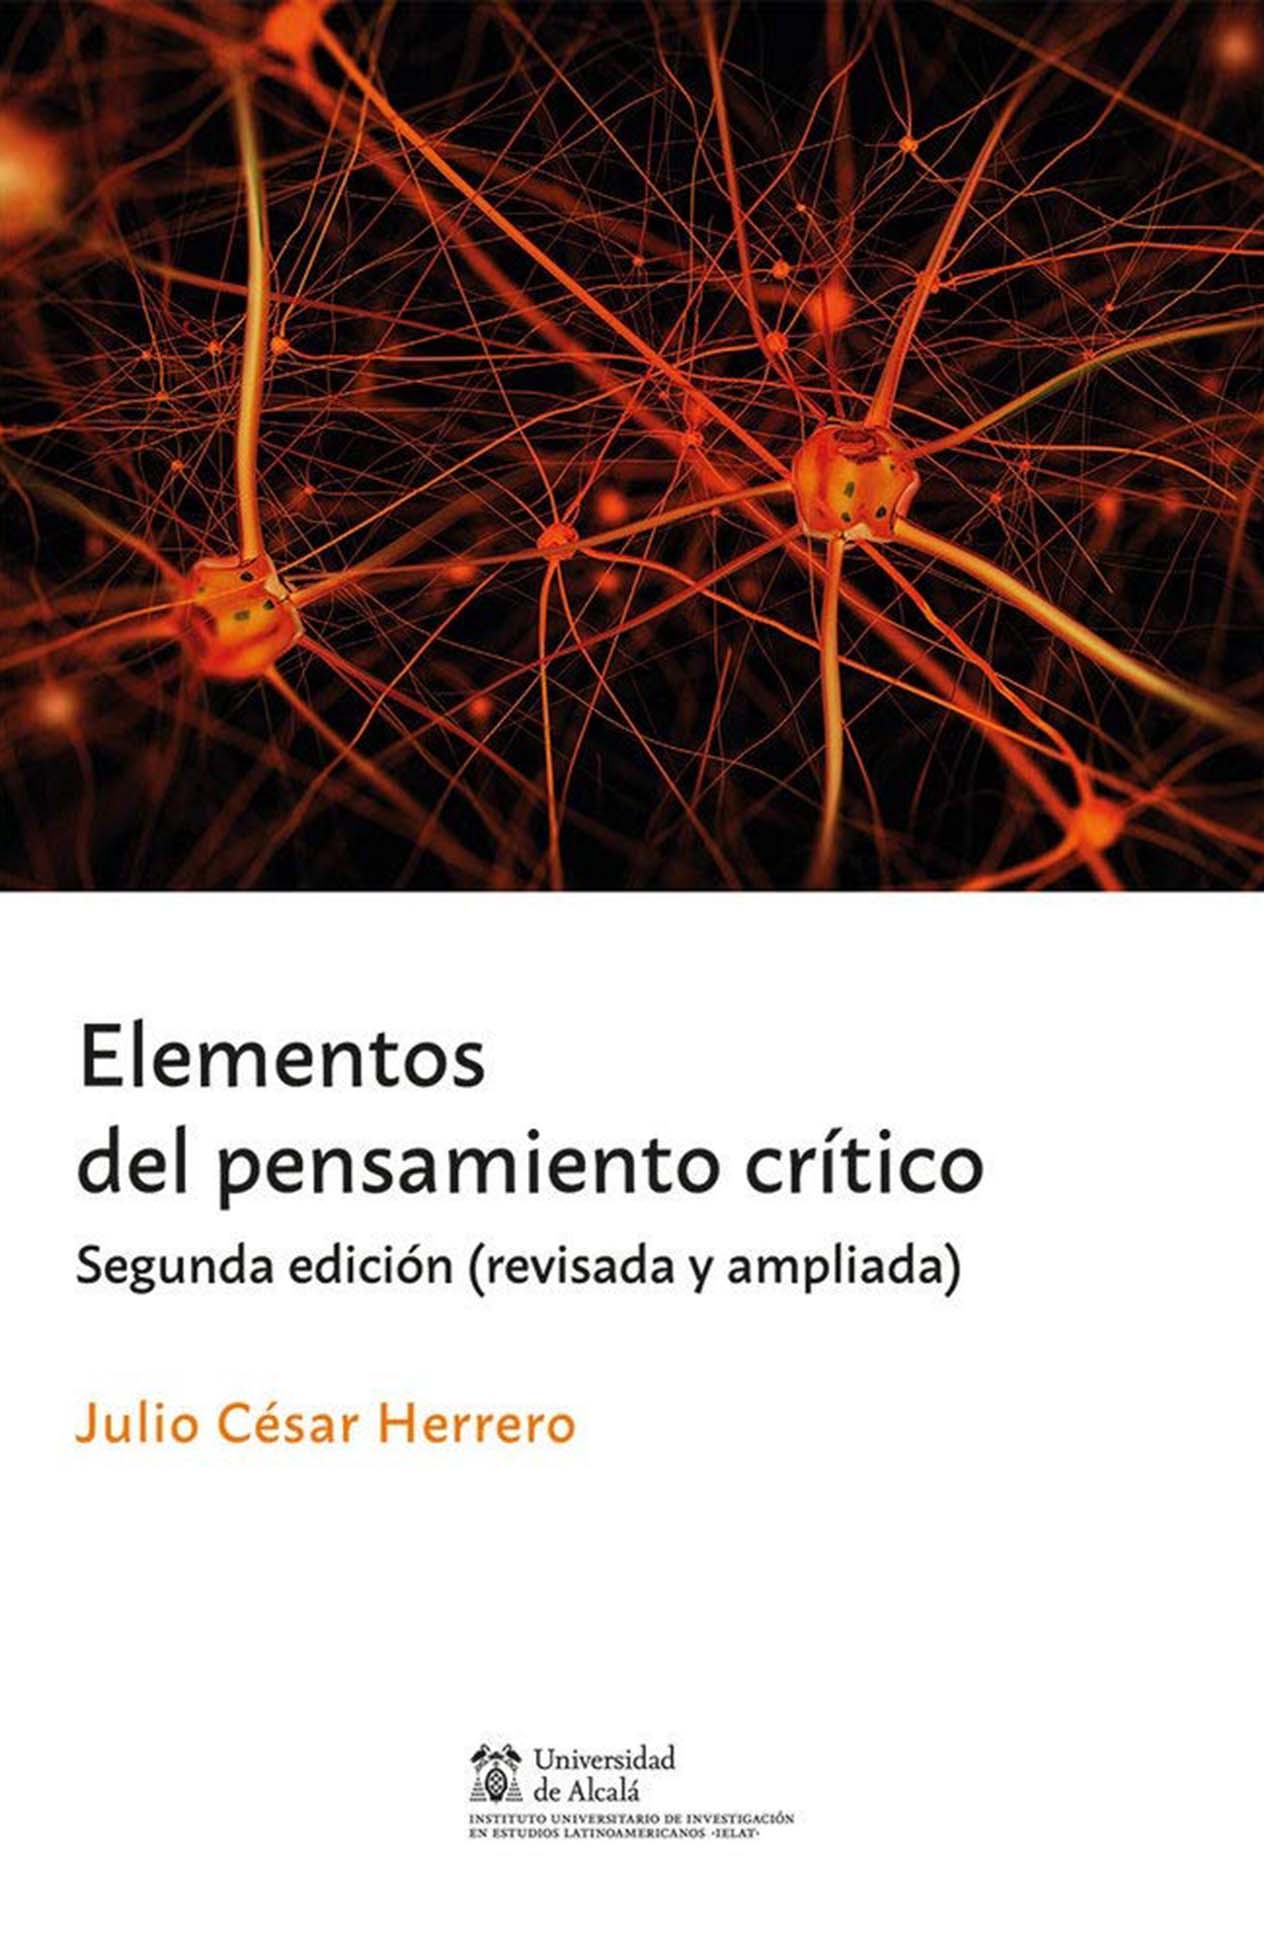 Portada del libro "Elementos del pensamiento crítico" de Julio César Herrero